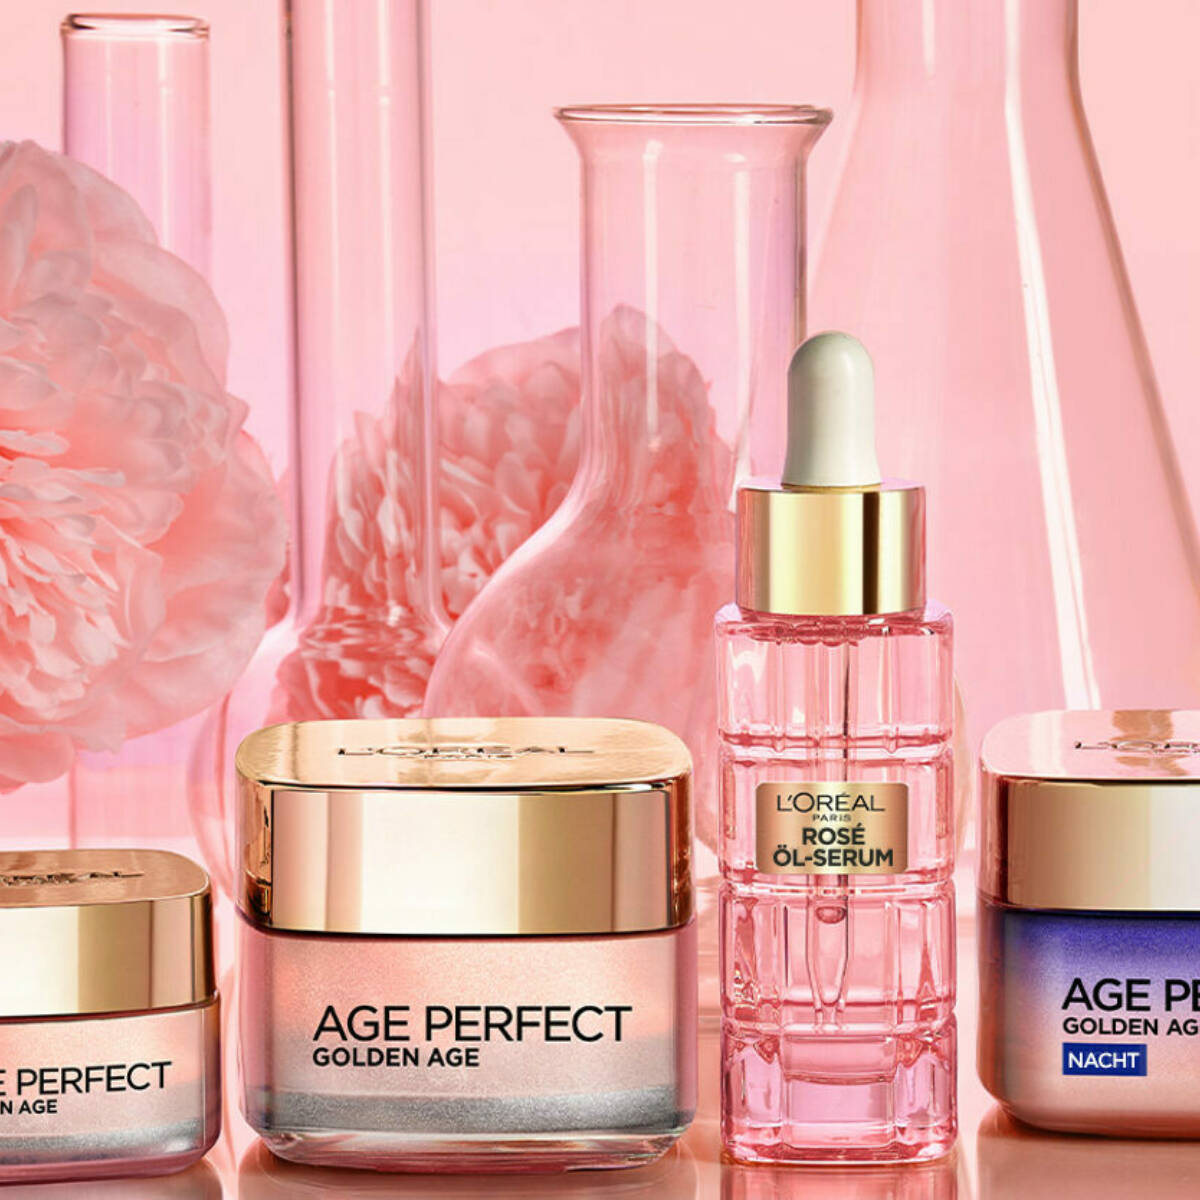 Die "Age Perfect Golden Age"-Pflegeserie von L‘Oréal Paris verleiht der Haut mehr Festigkeit und einen jugendlich rosig-frischen Teint